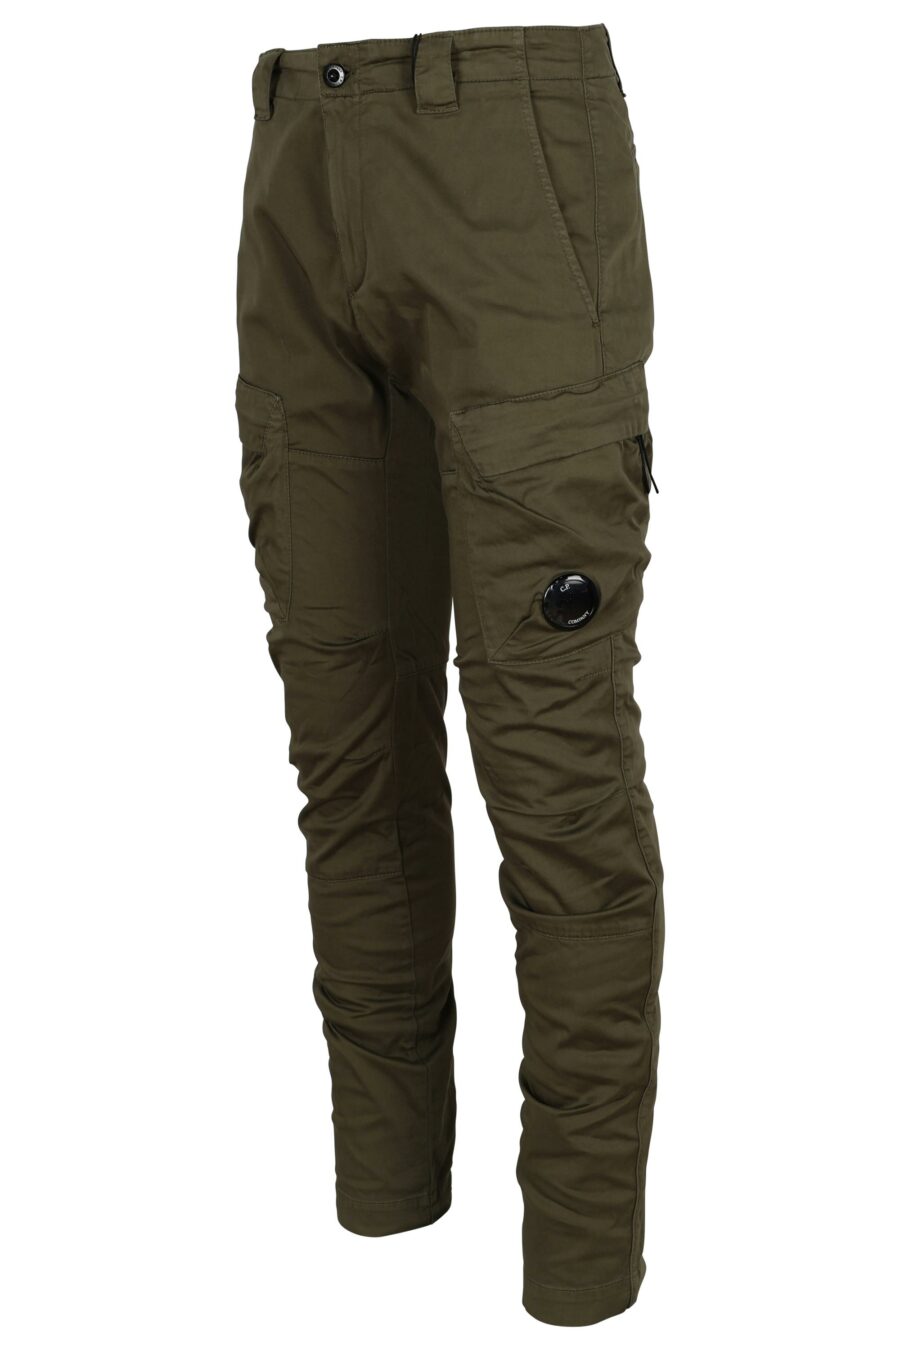 Pantalon cargo vert militaire avec lentille logo - 7620943722628 1